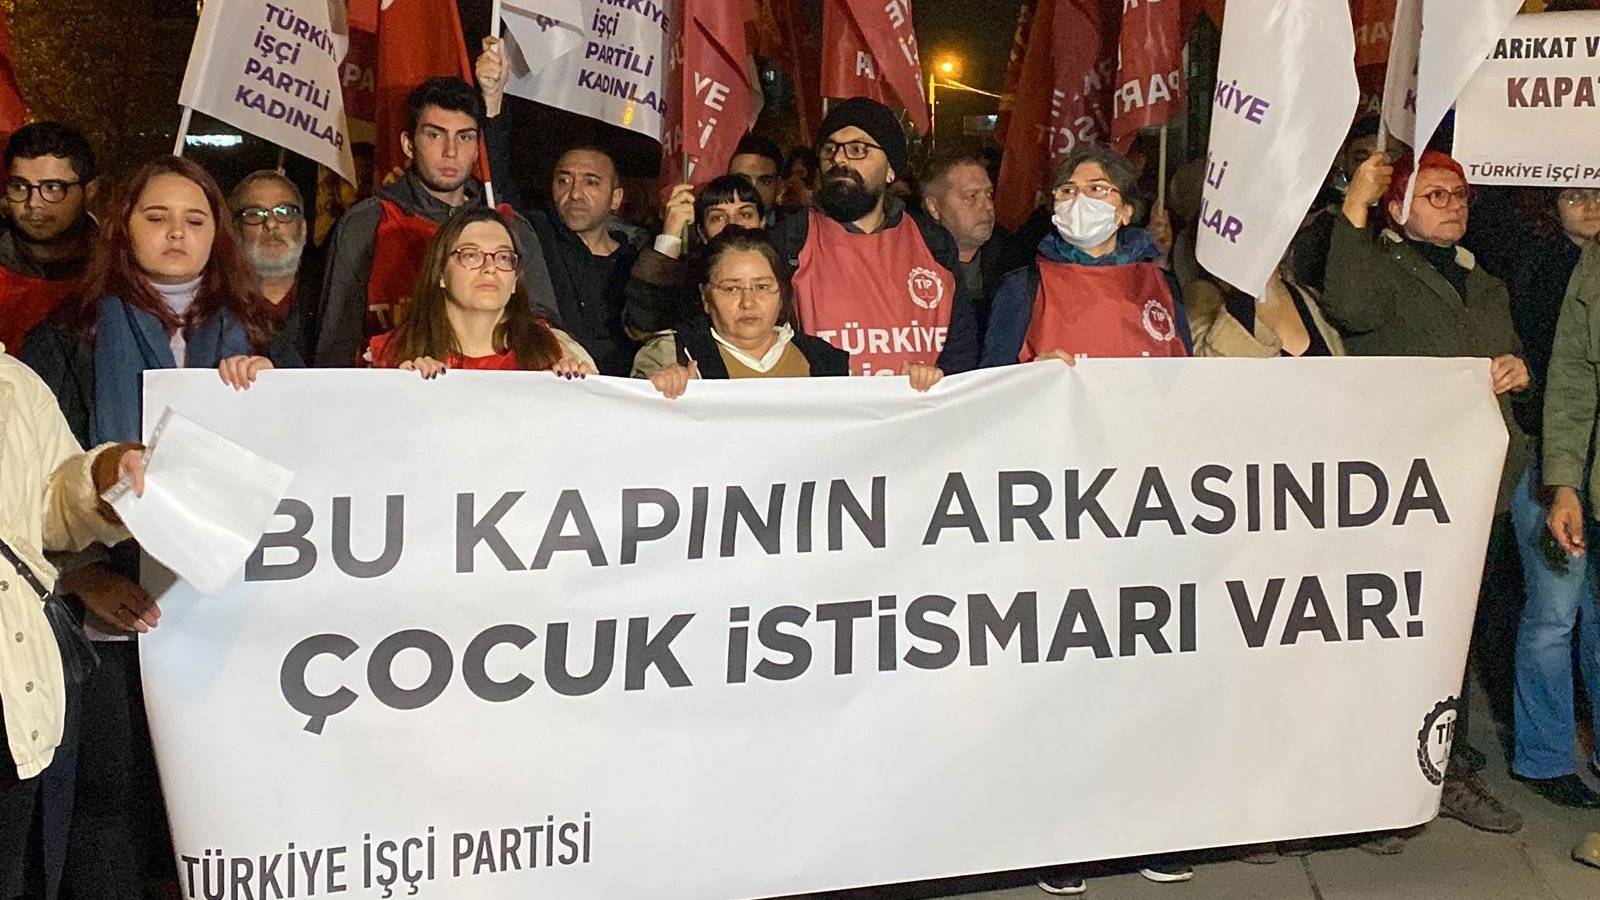 TİP üyelerinden Hiranur Vakfı önünde protesto: "Tecavüzcüleri aklayanlar, 'küçüğün rızası' lafını kullanmaya cüret edenler bu suçun ortağıdır!"